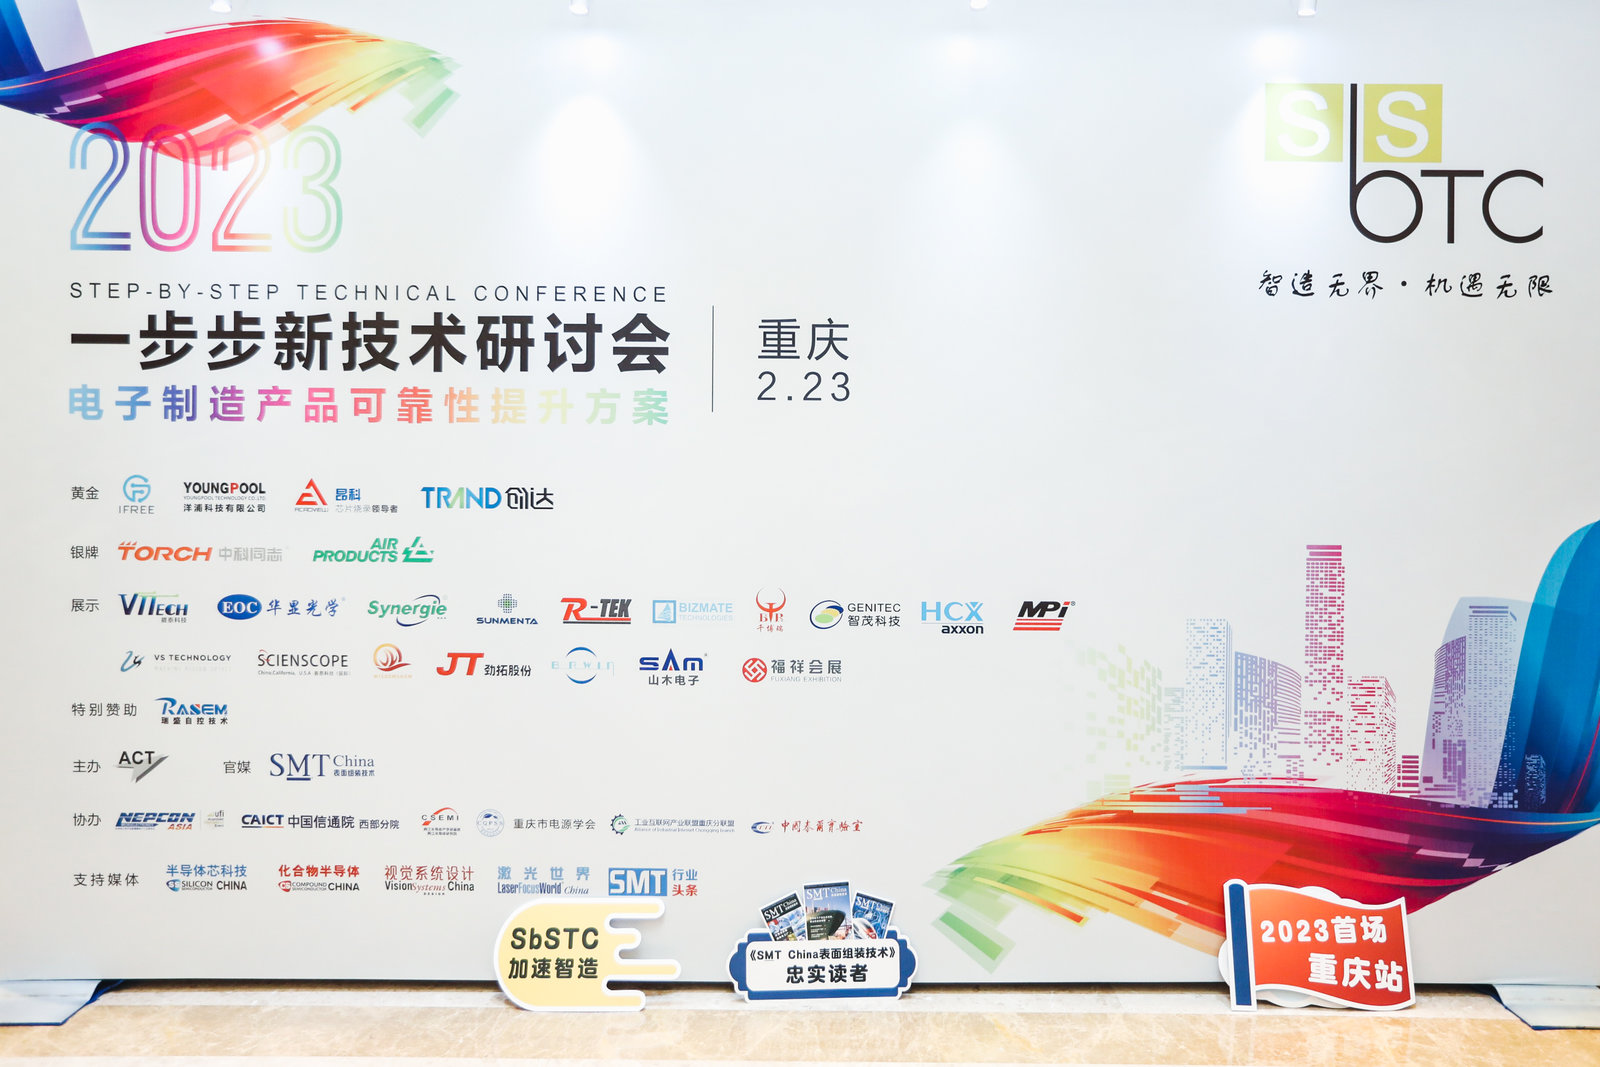 重庆一步步新技术研讨会